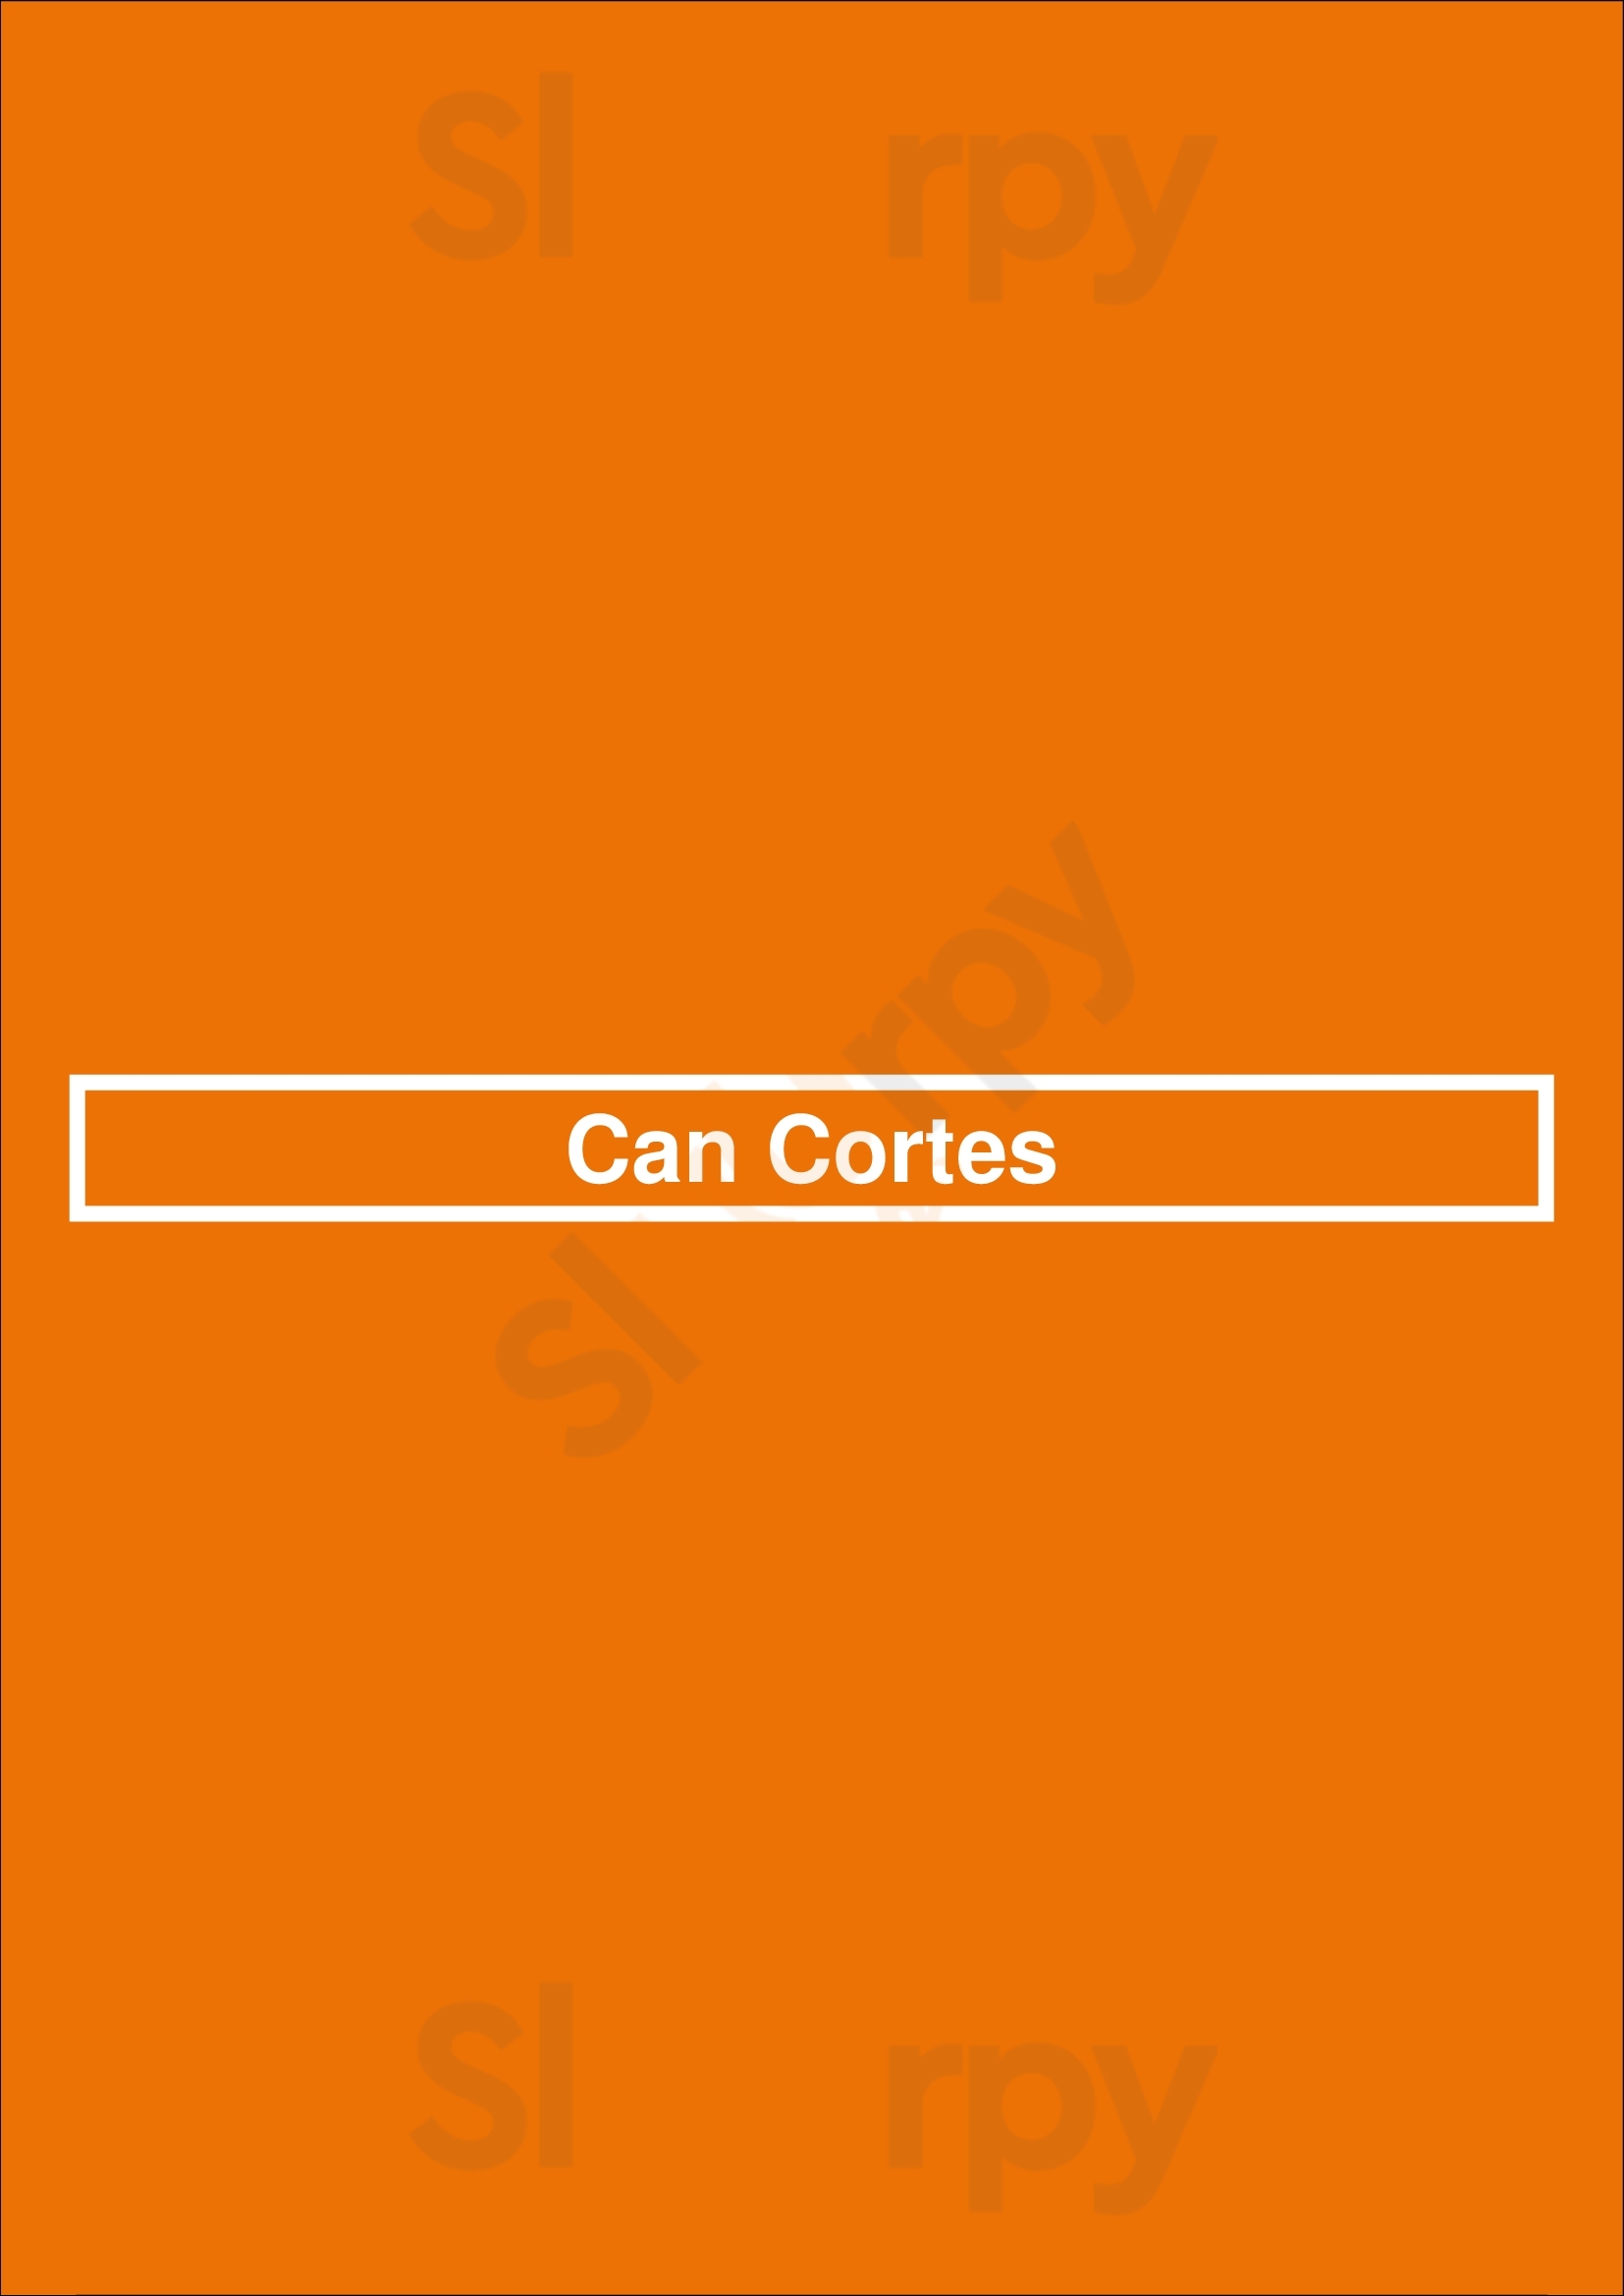 Can Cortes Sant Cugat del Vallès Menu - 1